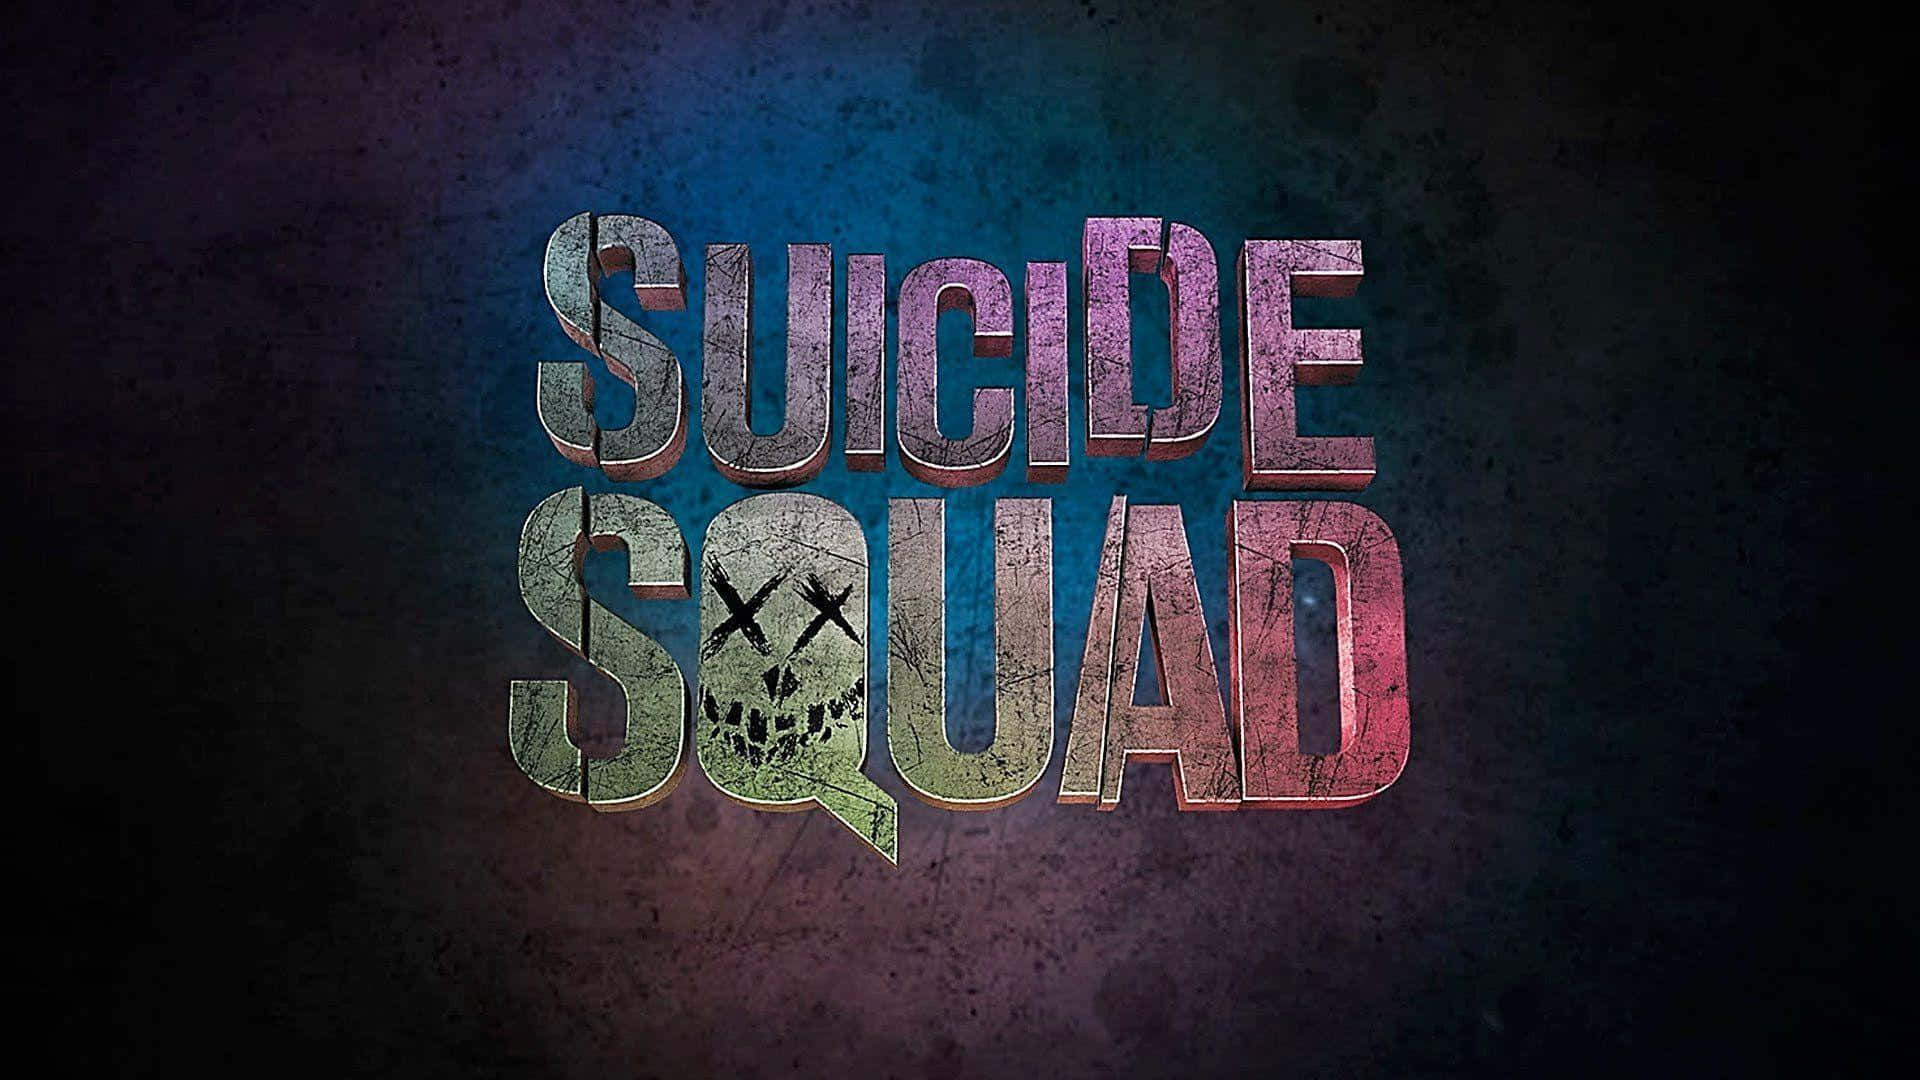 Gördig Redo För Dc:s Ultimata Skurkförening I The Suicide Squad. Wallpaper